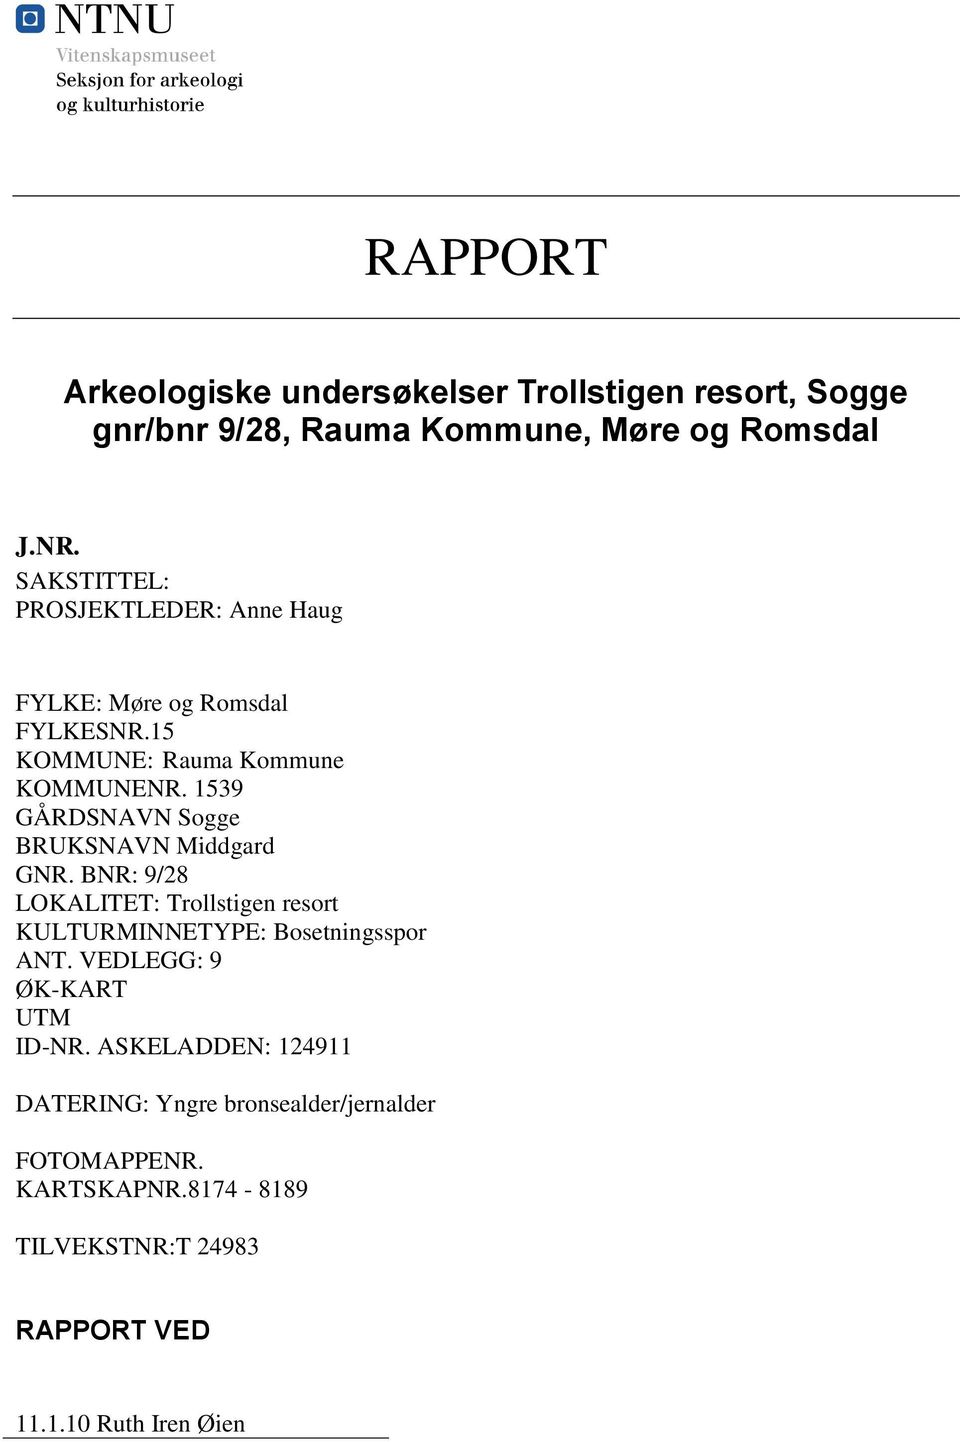 1539 GÅRDSNAVN Sogge BRUKSNAVN Middgard GNR. BNR: 9/28 LOKALITET: Trollstigen resort KULTURMINNETYPE: Bosetningsspor ANT.